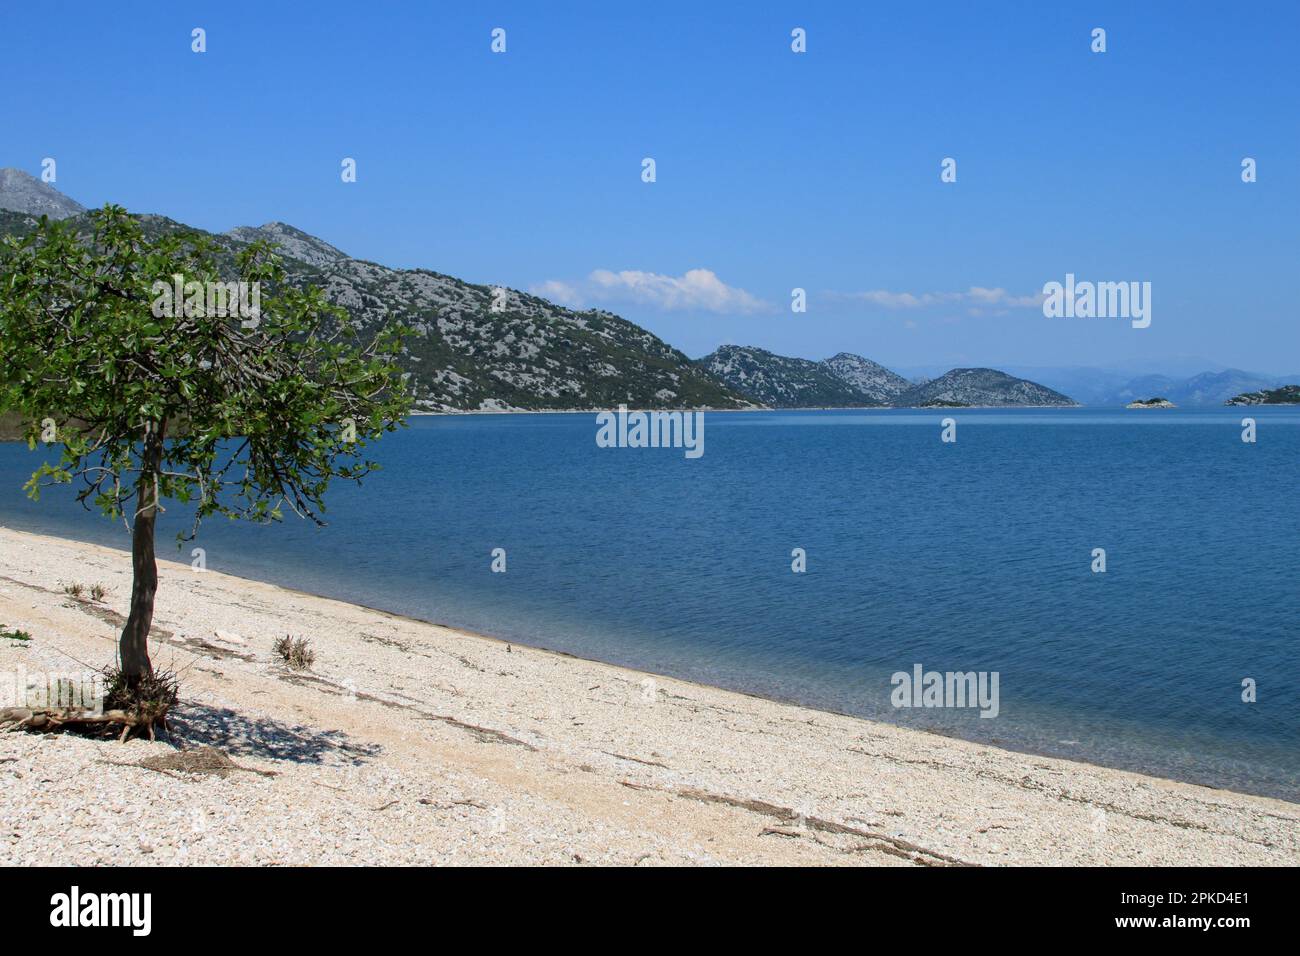 Beach with fig tree, Donji Murici, Lake Scutari National Park, Lake Skadar, Lake Scutari, Lake Scutari, Montenegro Stock Photo